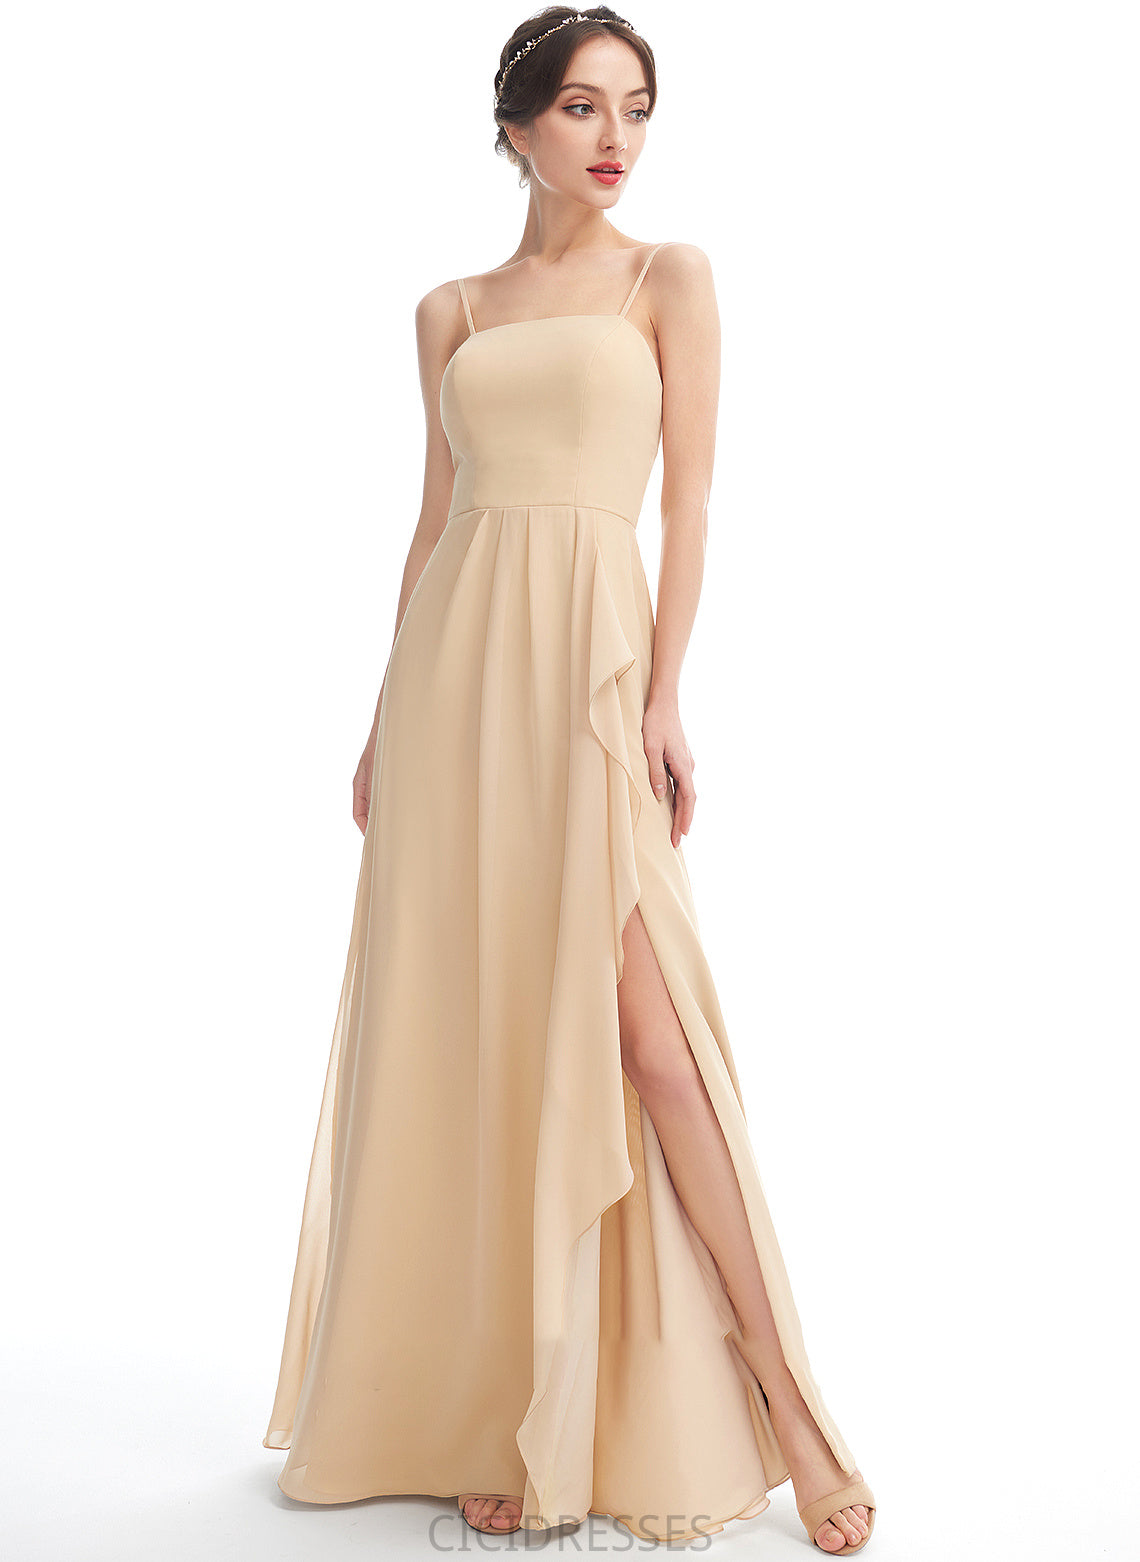 SquareNeckline Embellishment Floor-Length SplitFront A-Line Fabric Silhouette Neckline Length Amari V-Neck Natural Waist Bridesmaid Dresses